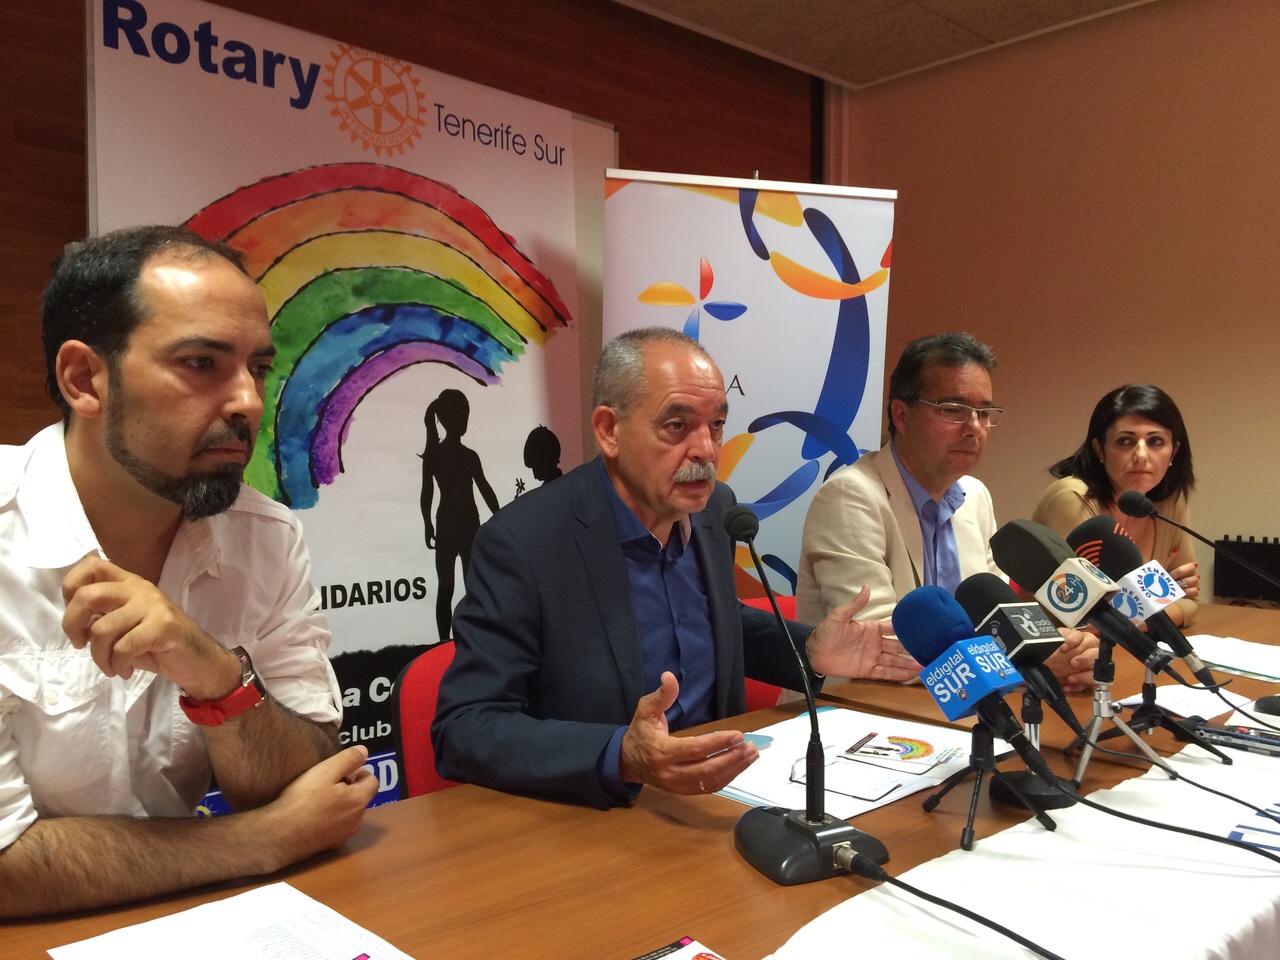 Se presenta en rueda de prensa la I Gala Solidaria de Rotary Tenerife Sur